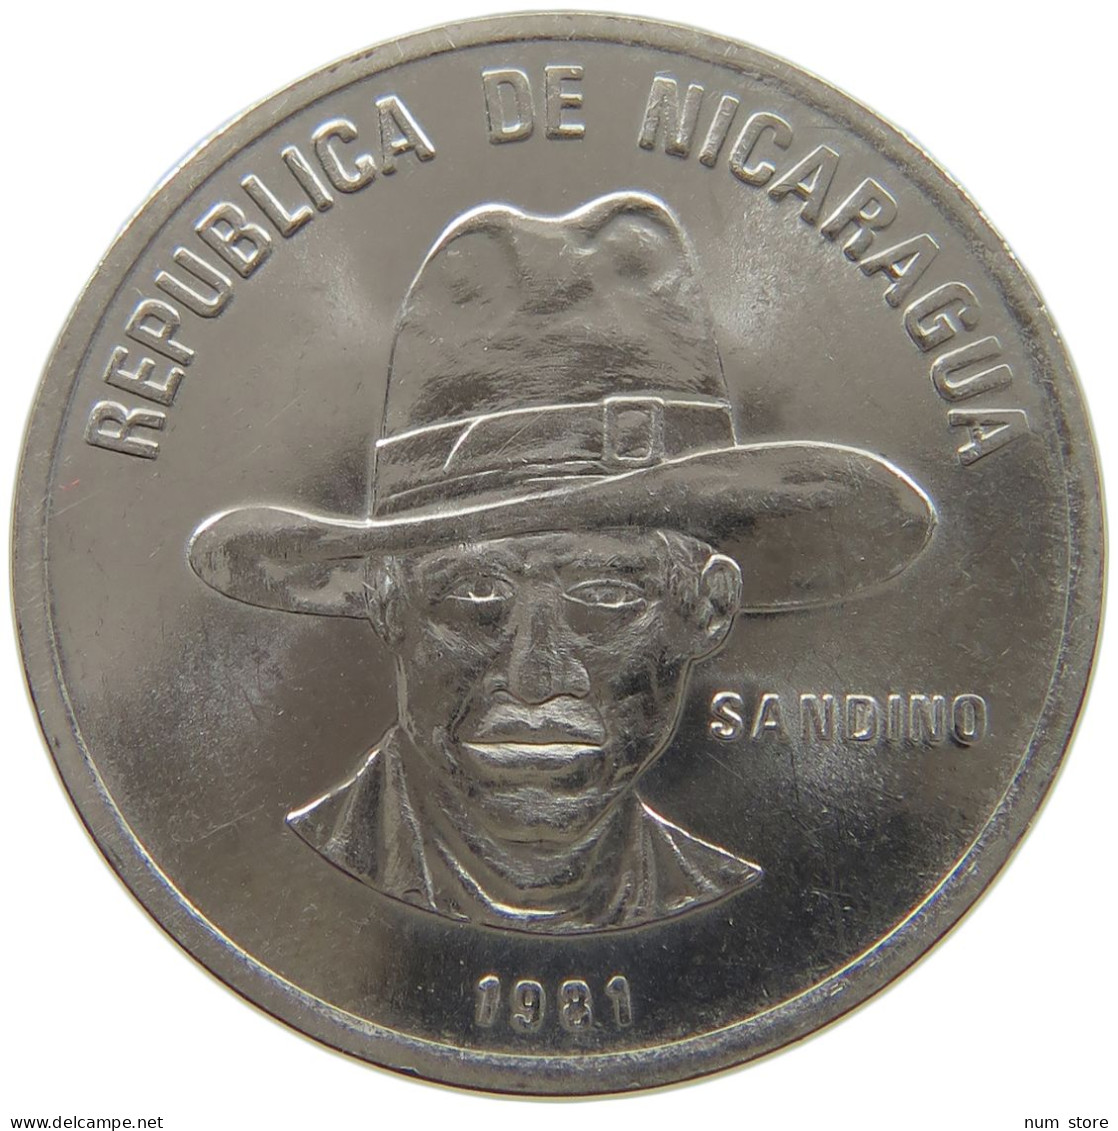 NICARAGUA 25 CENTAVOS 1981  #MA 025425 - Nicaragua